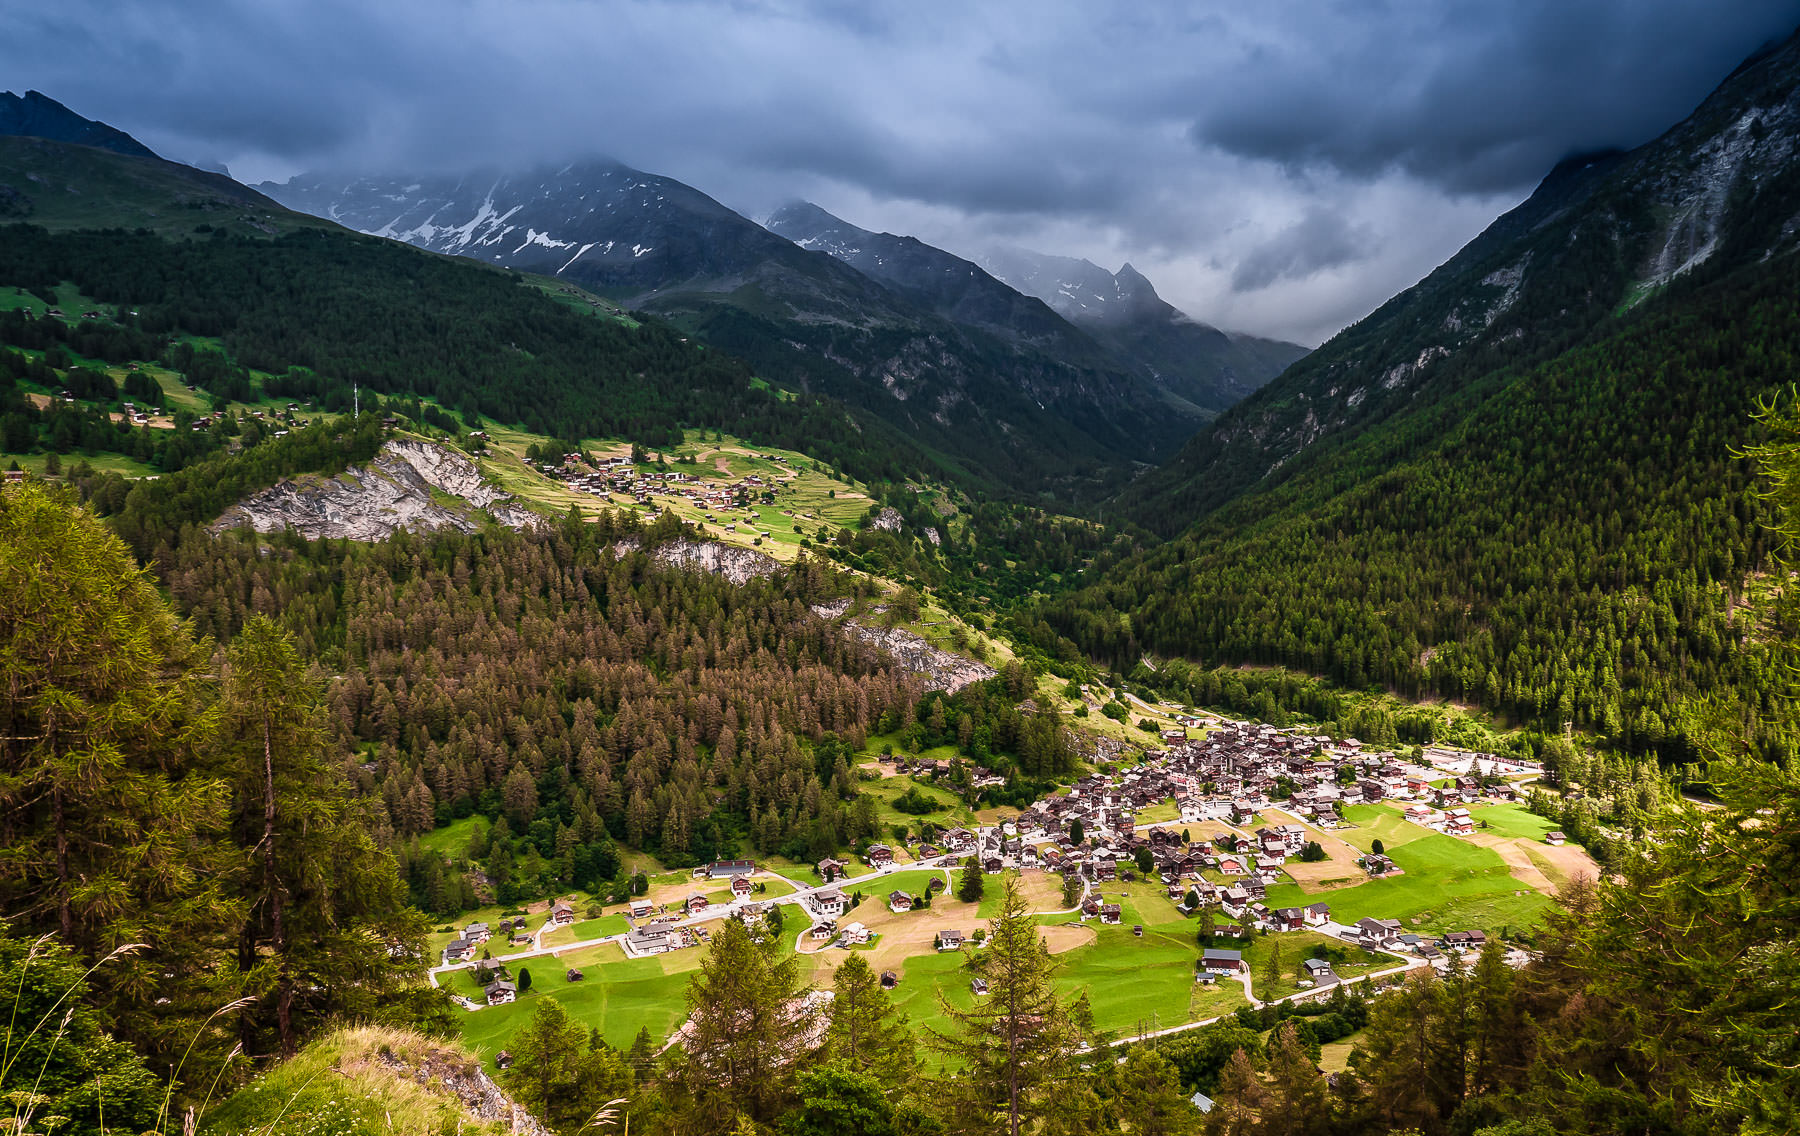 Les Haudères, La Tour VS, Canton du Valais, Switzerland